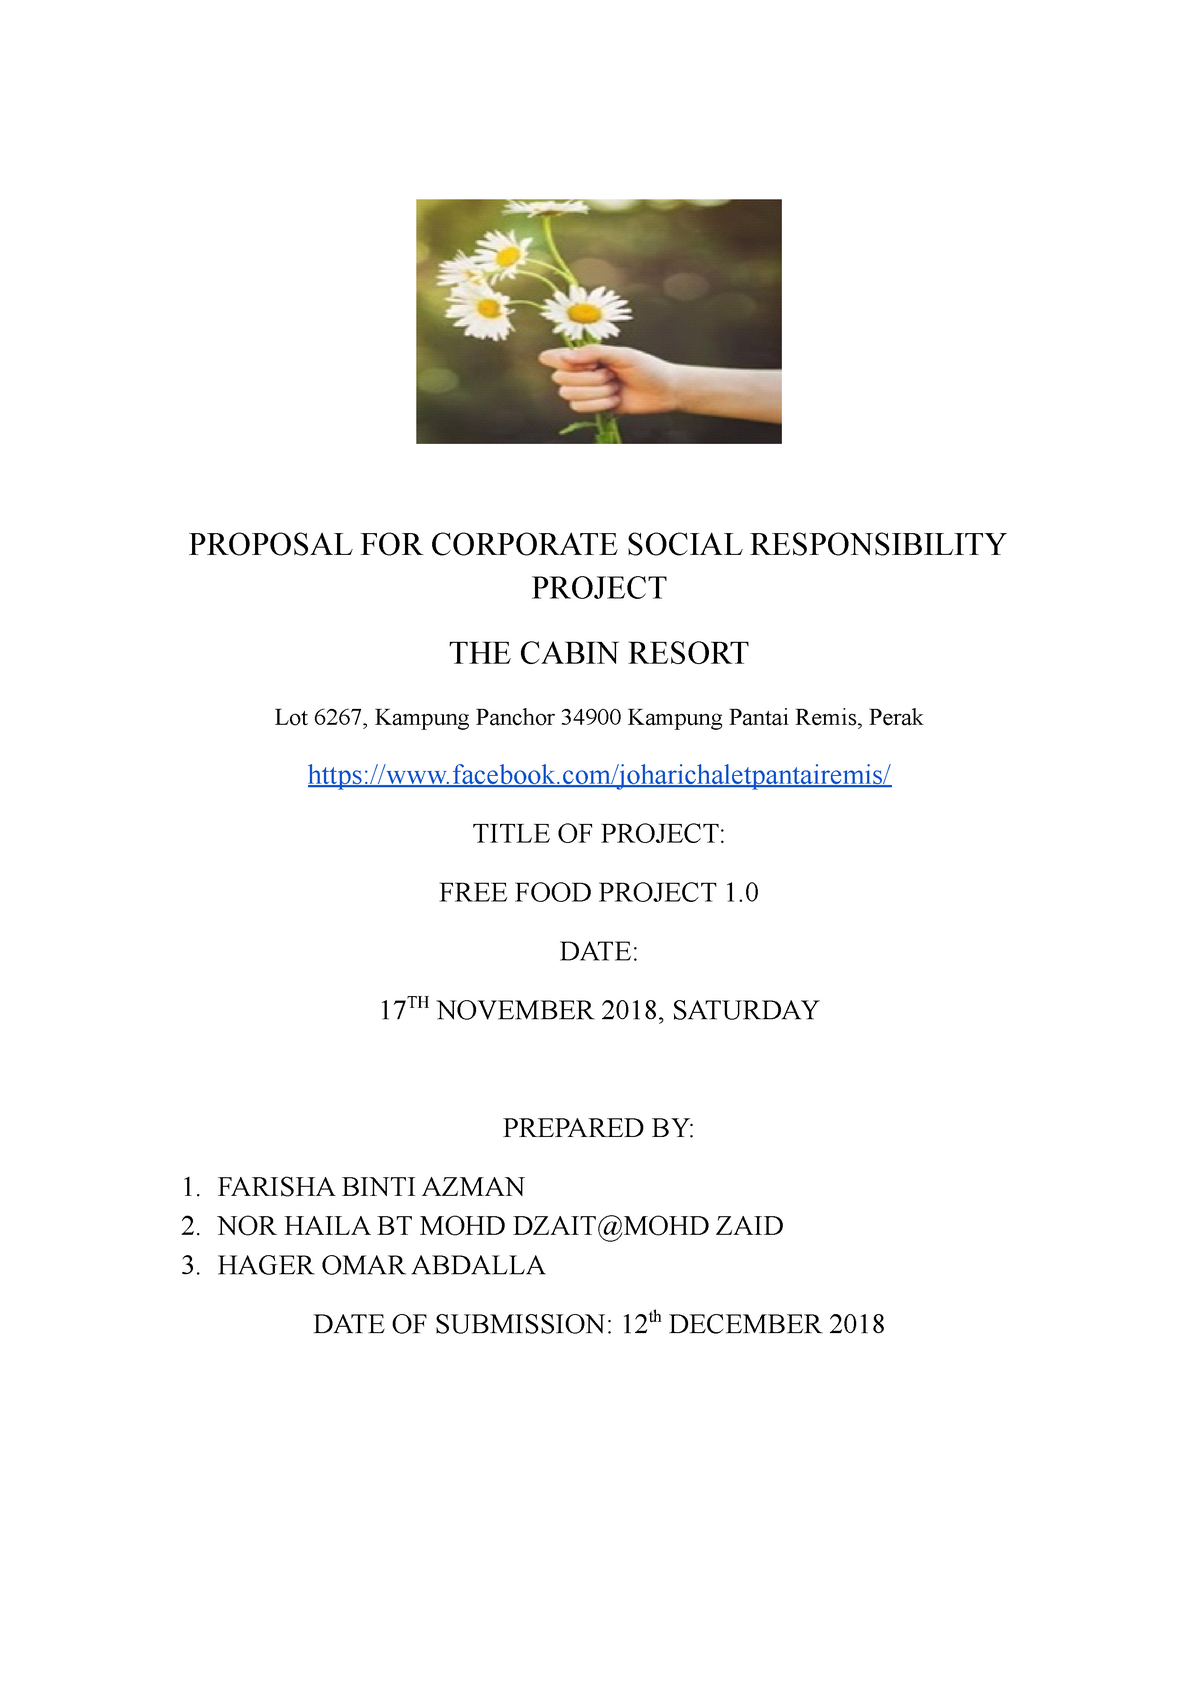 research proposal on csr pdf